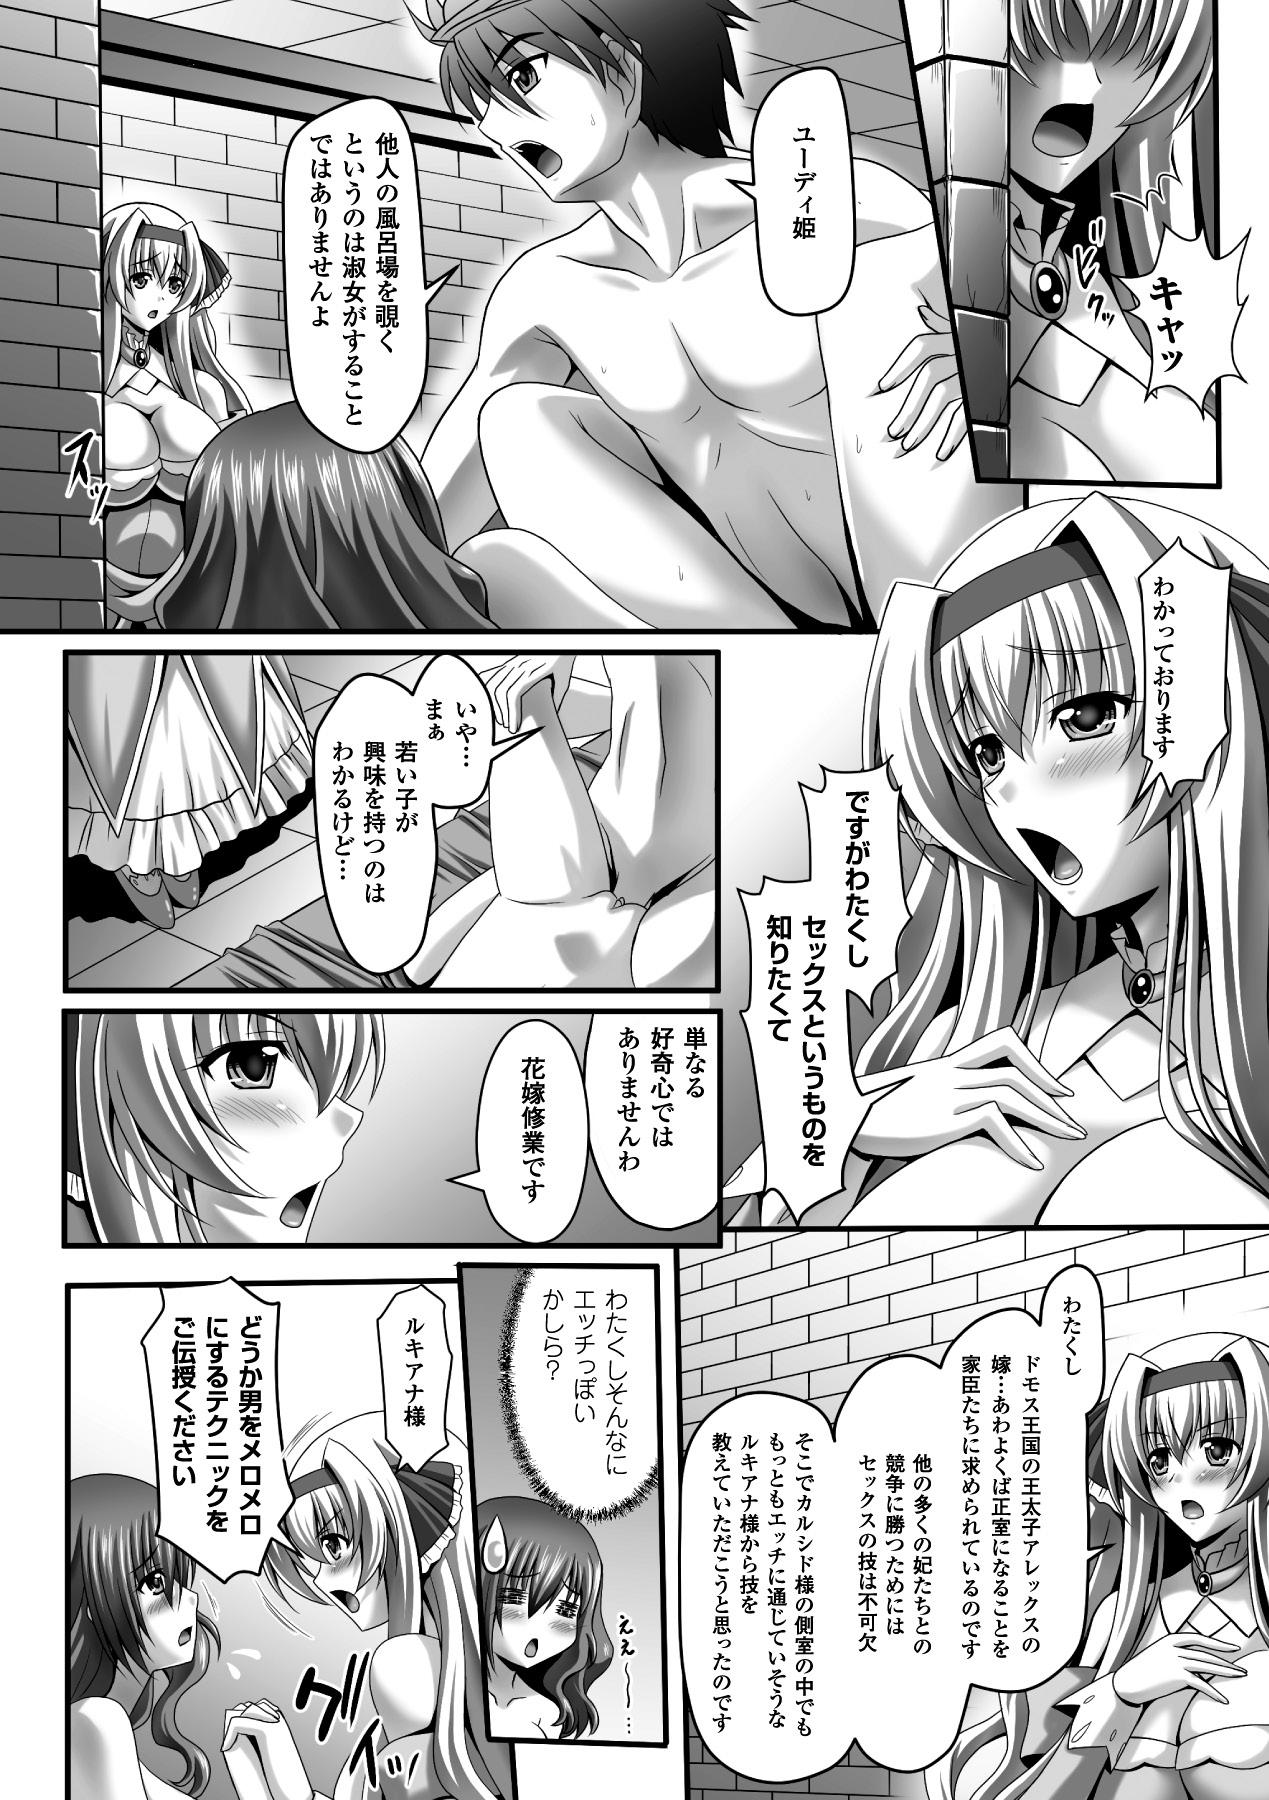 Shemale Megami Crisis 14 - Taimanin asagi Asian Babes - Page 12